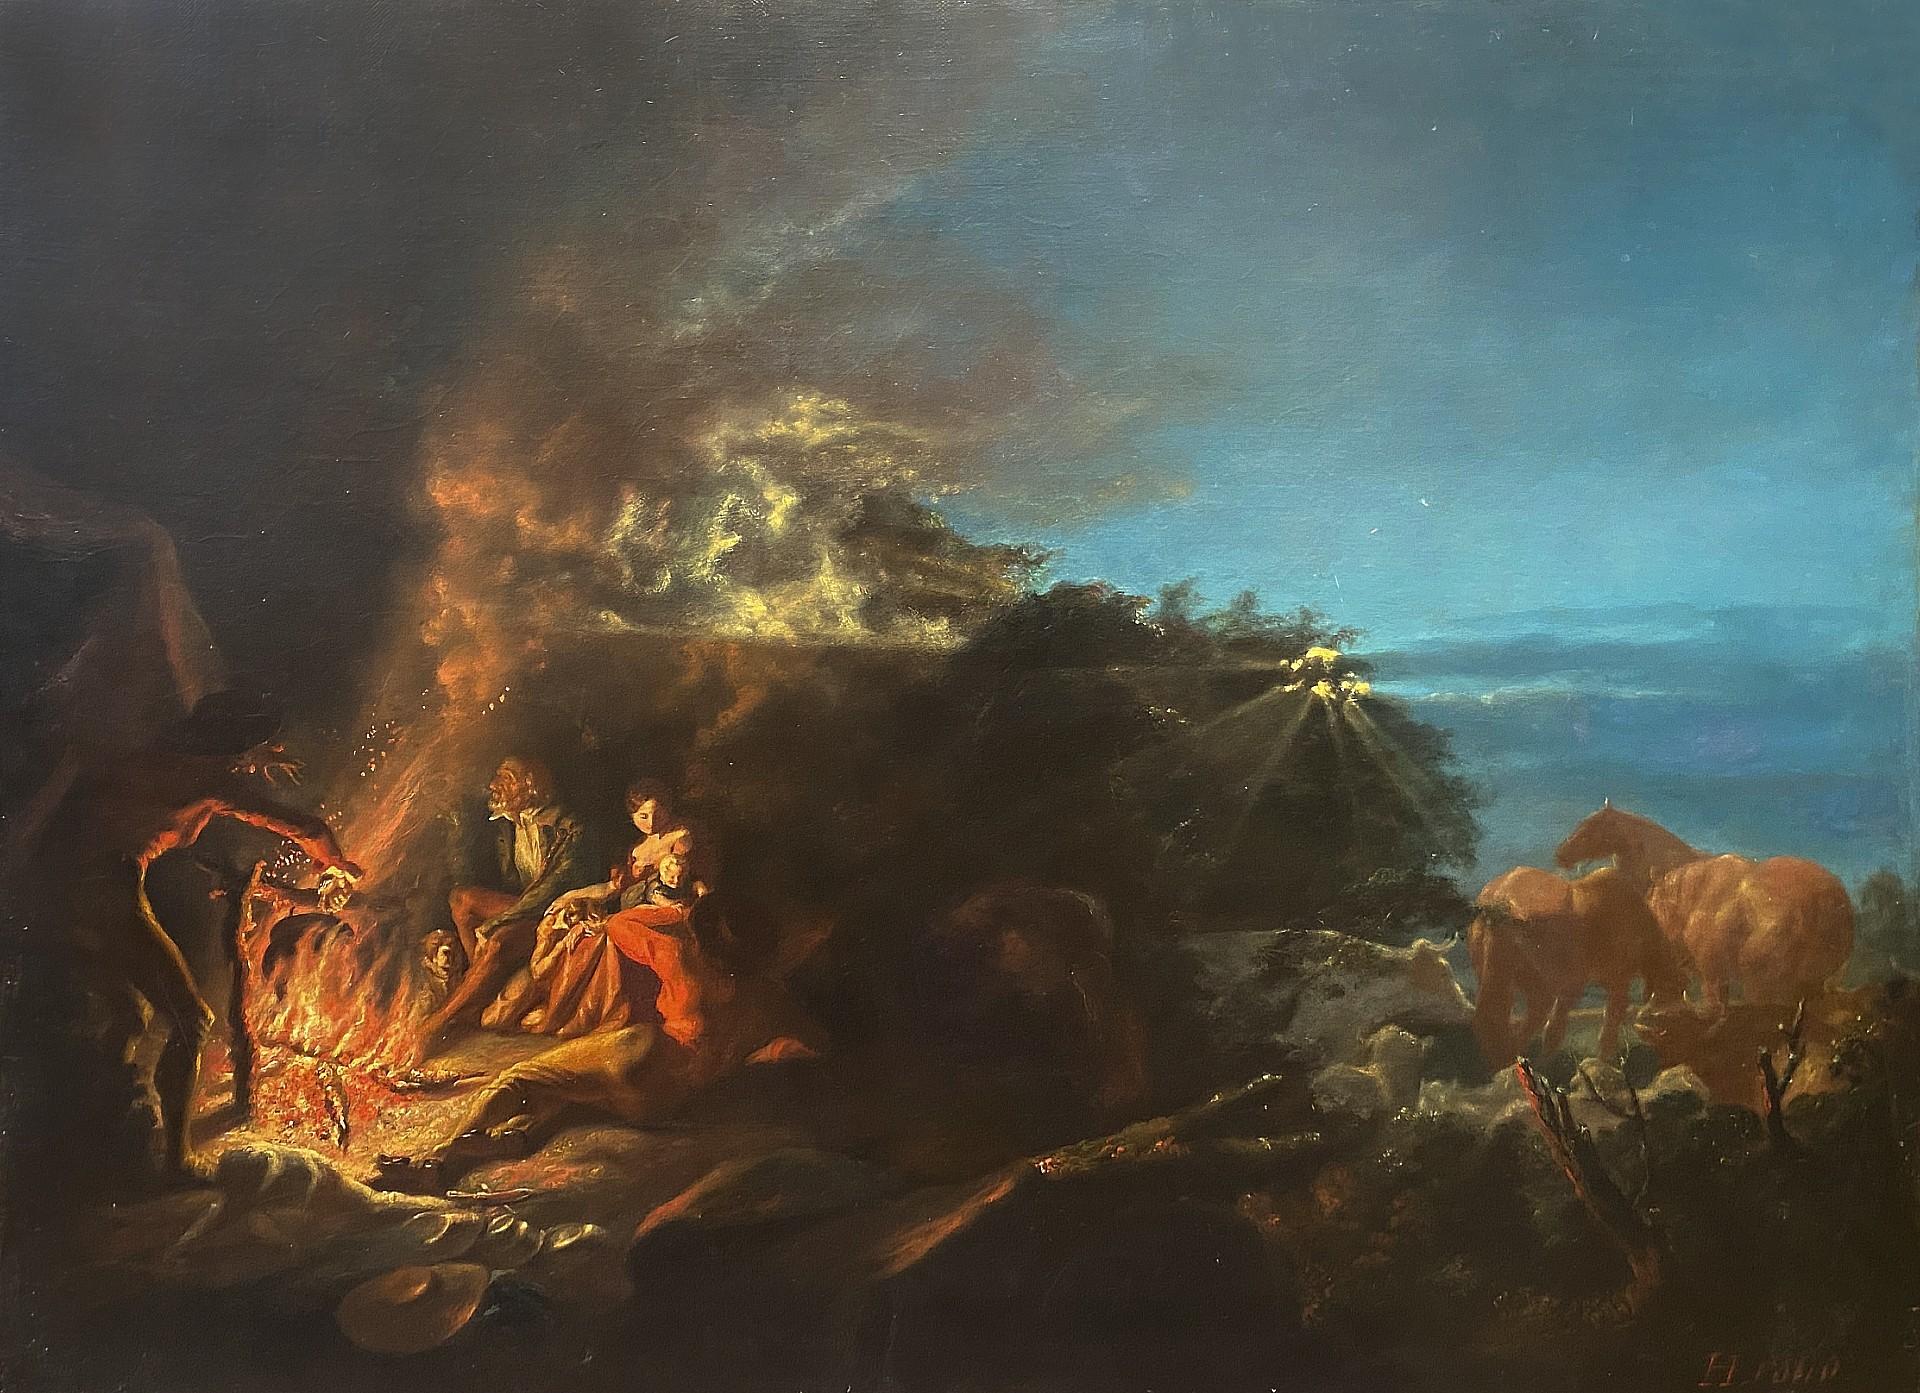 Around the Camp Fire, peinture à l'huile du 19e siècle, datée de 1840